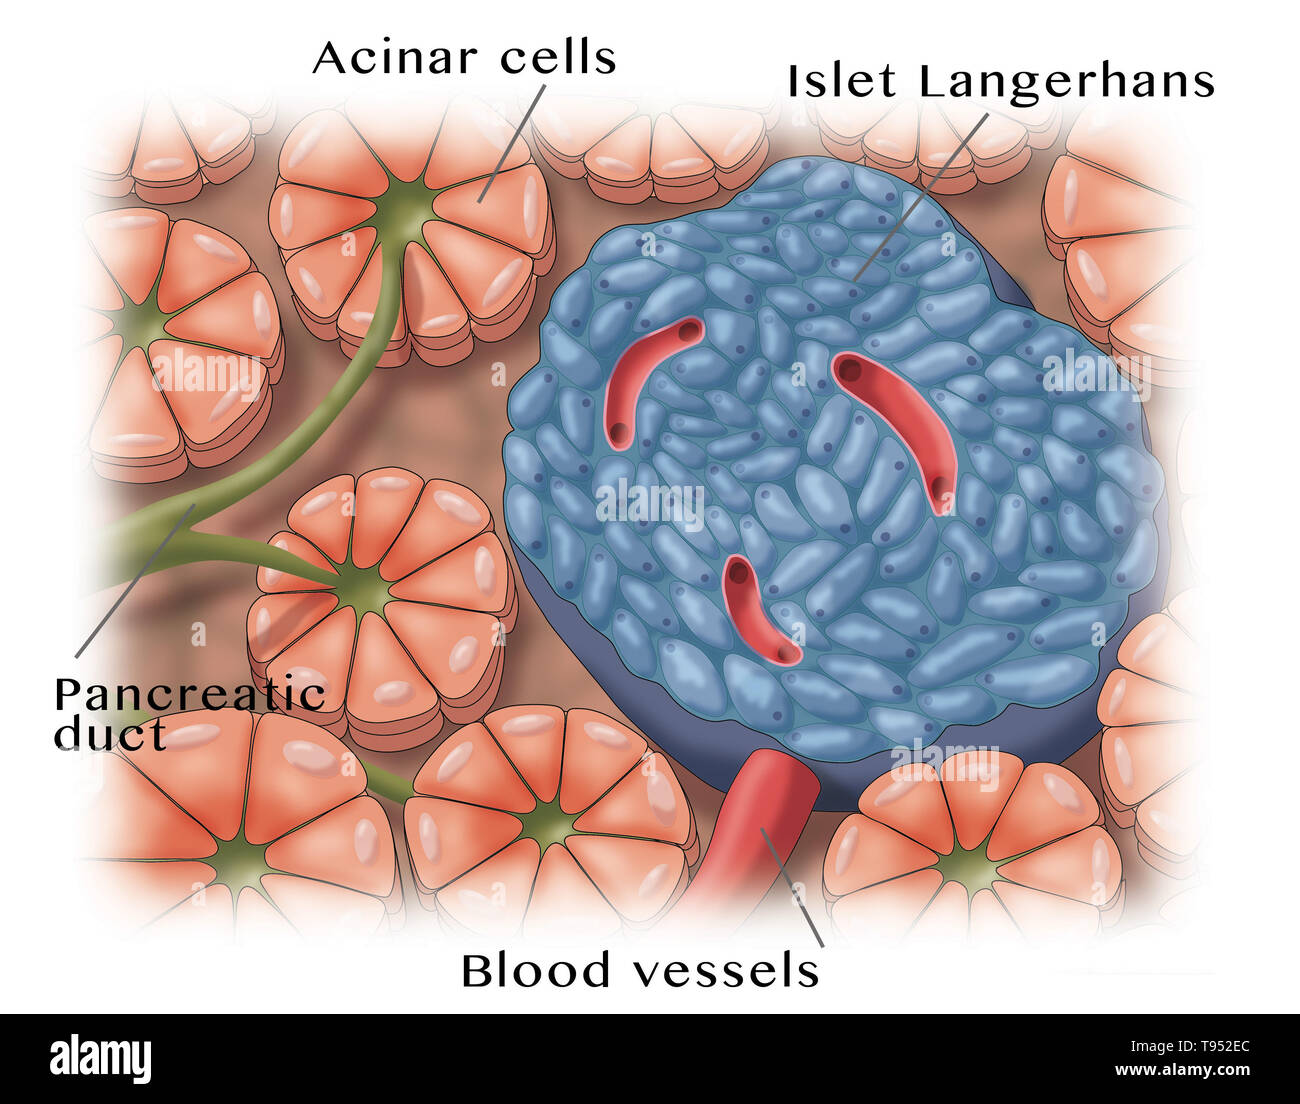 Illustrazione di isolotti pancreatici, chiamato anche gli isolotti di Langerhans, piccoli cluster di celle sparsi per tutto il pancreas. Foto Stock